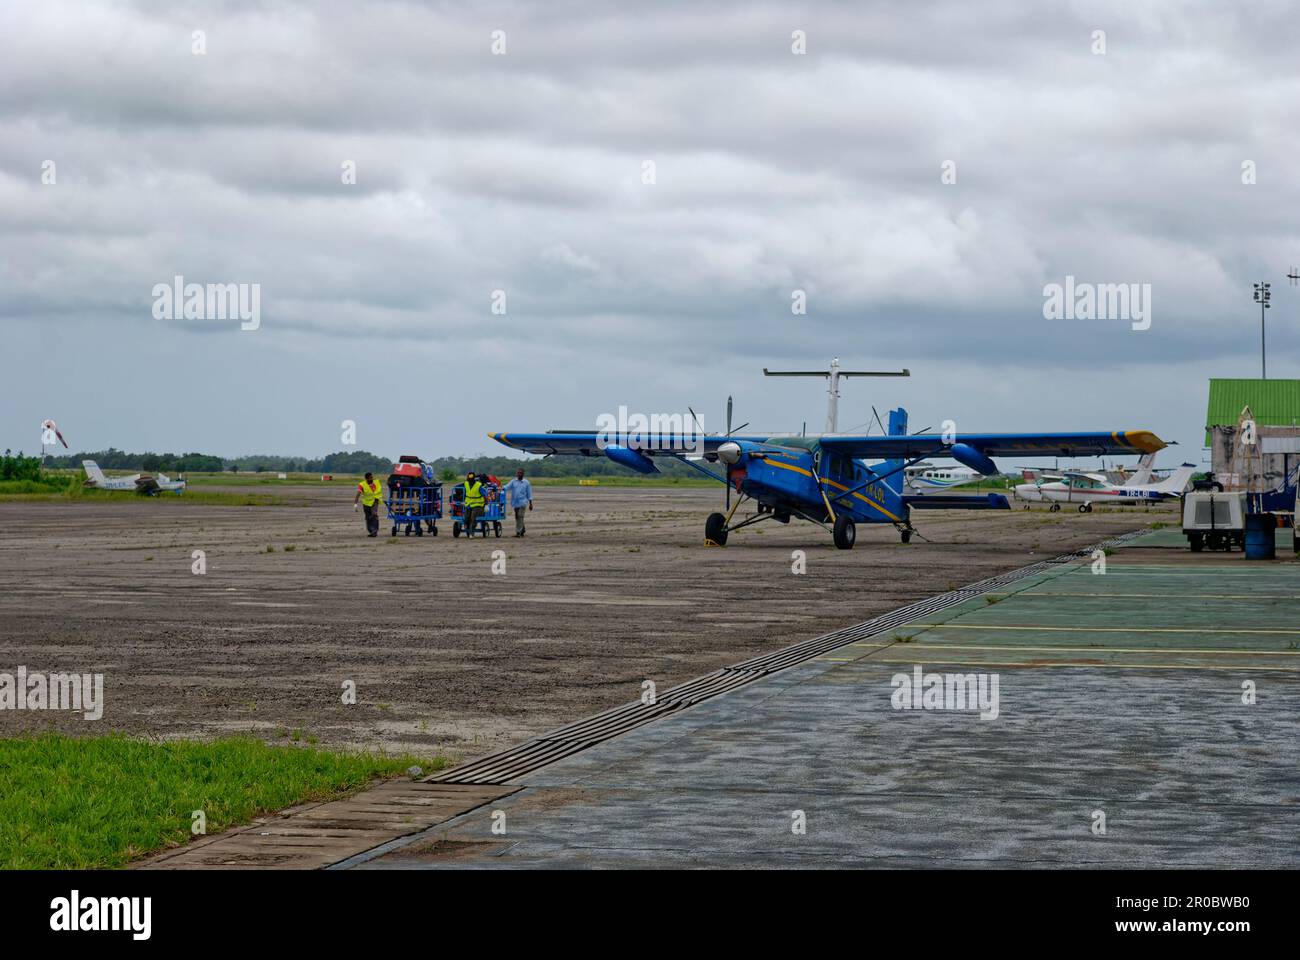 Les employés des aéroports qui se mettent à transporter des chariots à bagages jusqu'au terminal de l'aéroport de Port-Gentil, dans le pays ouest-africain du Gabon, en train de dépérir la saison des pluie Banque D'Images